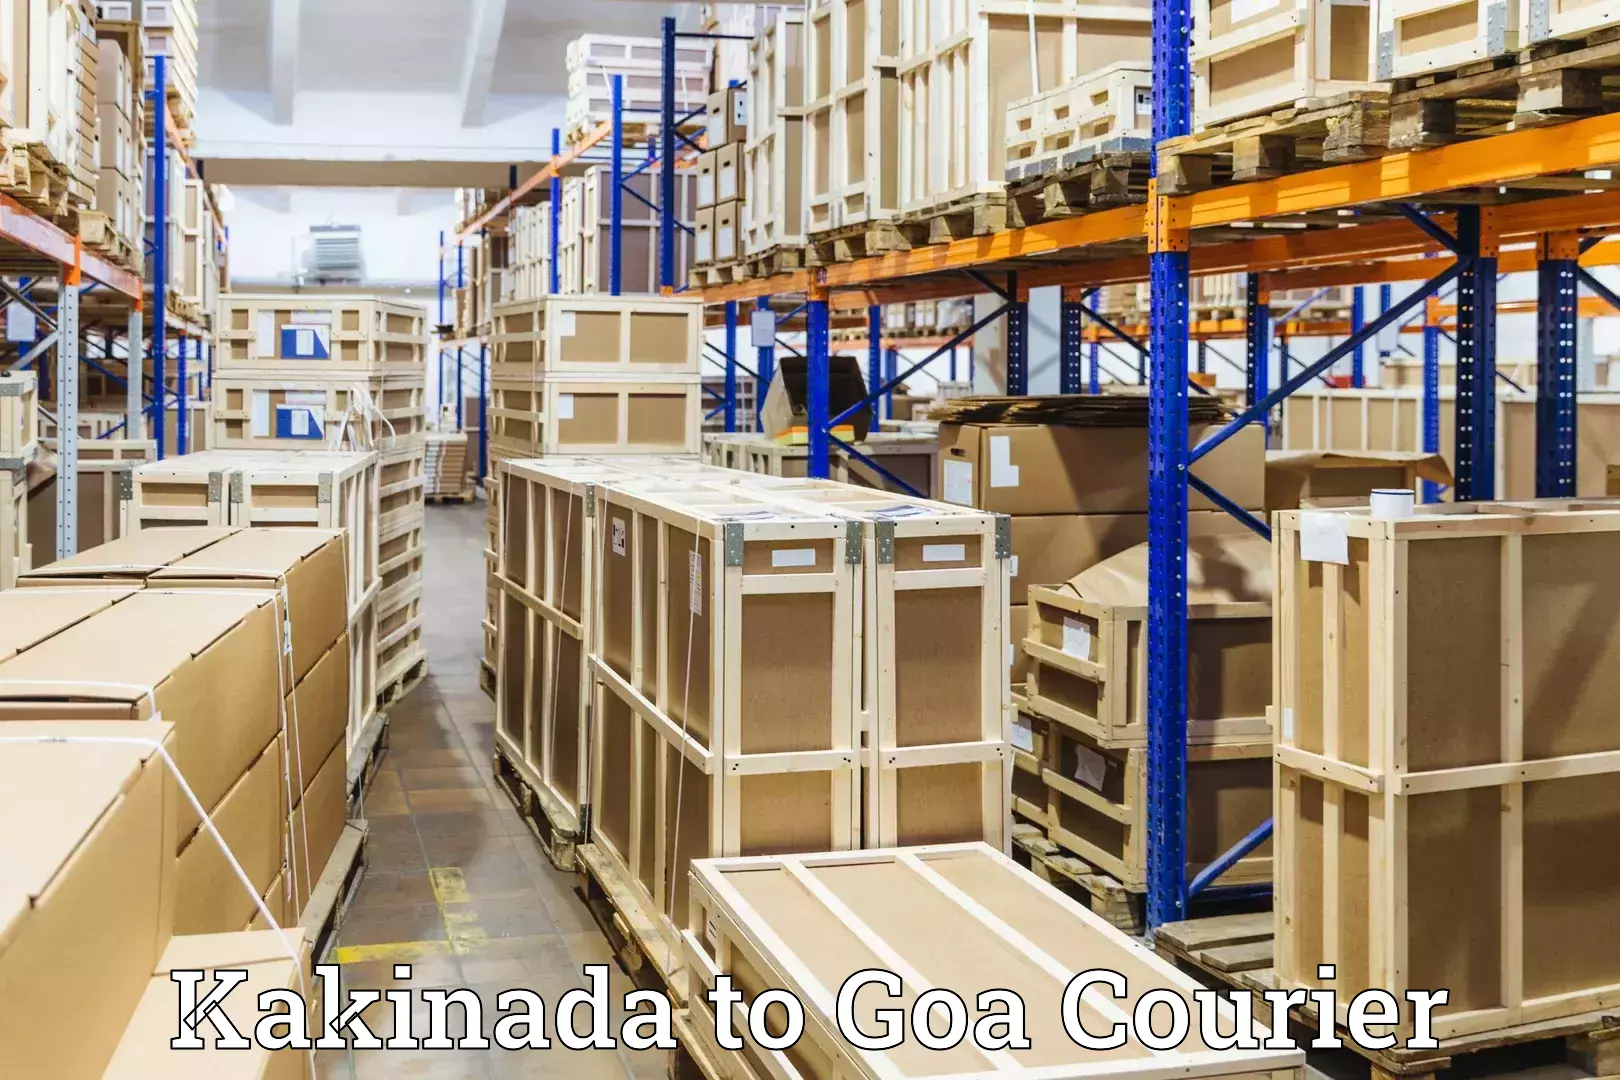 Luggage courier network Kakinada to Goa